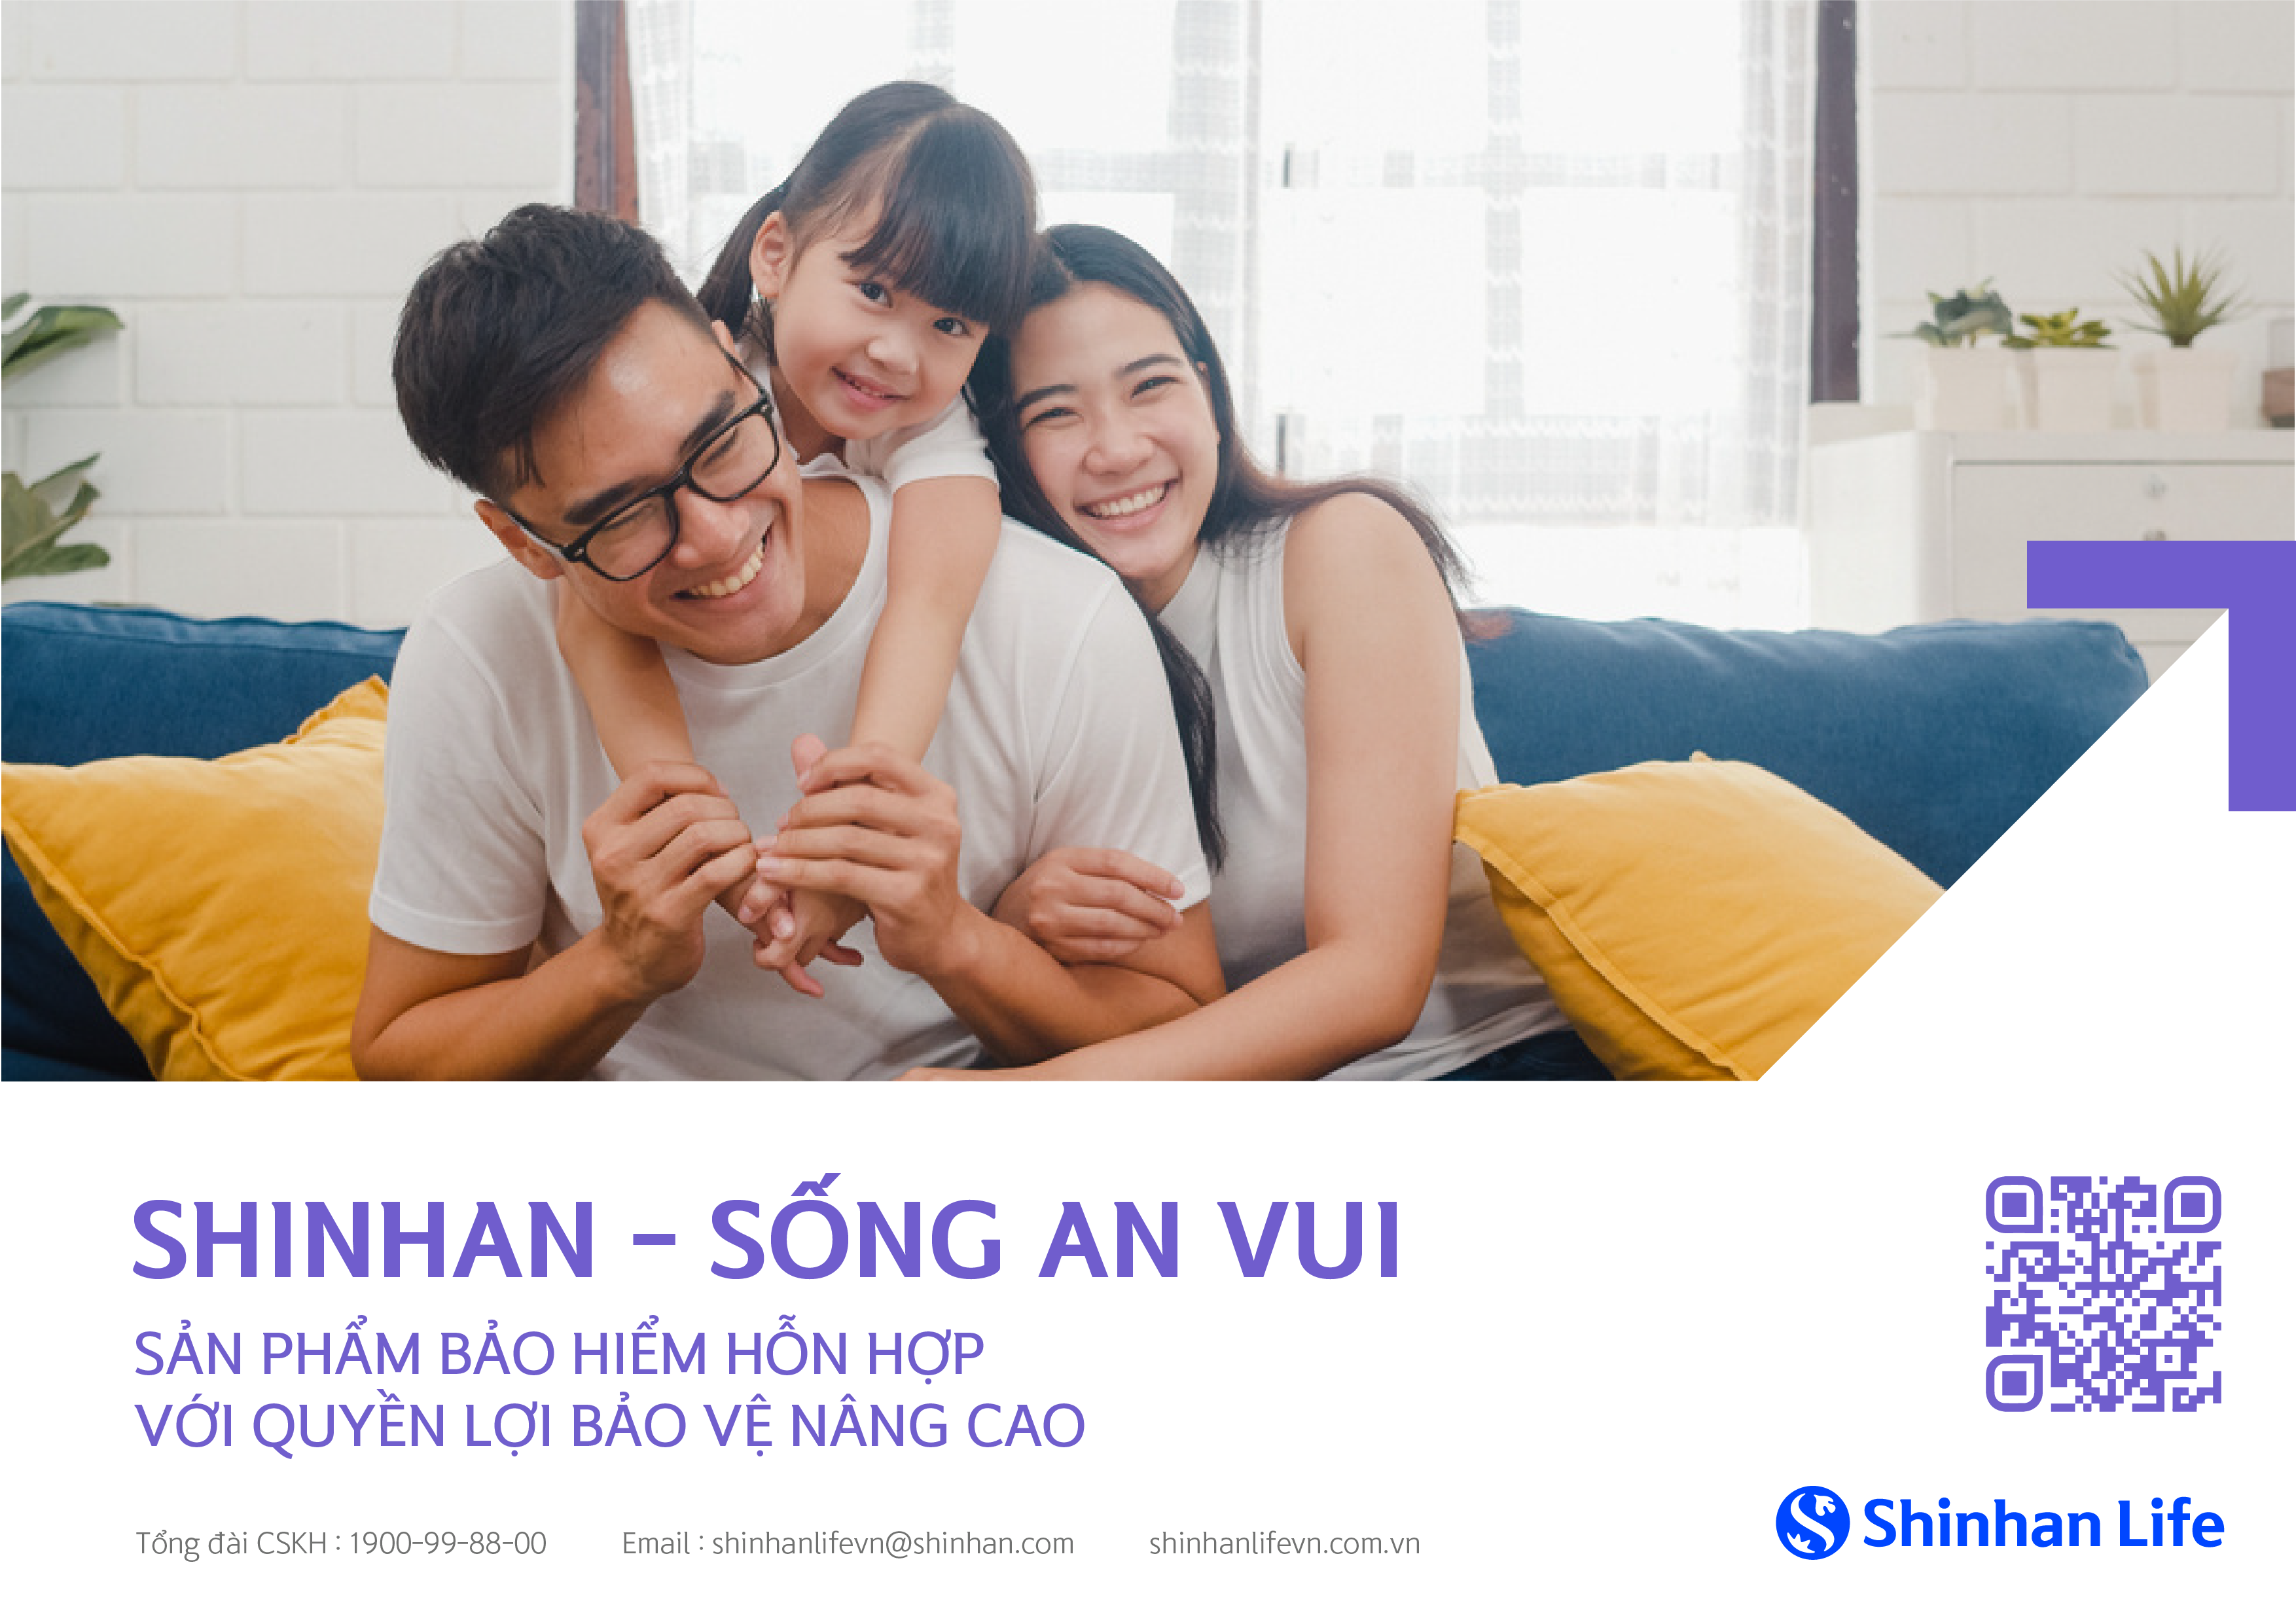 Shinhan Life Việt Nam ra mắt sản phẩm bảo hiểm “Shinhan – sống an vui” - 1